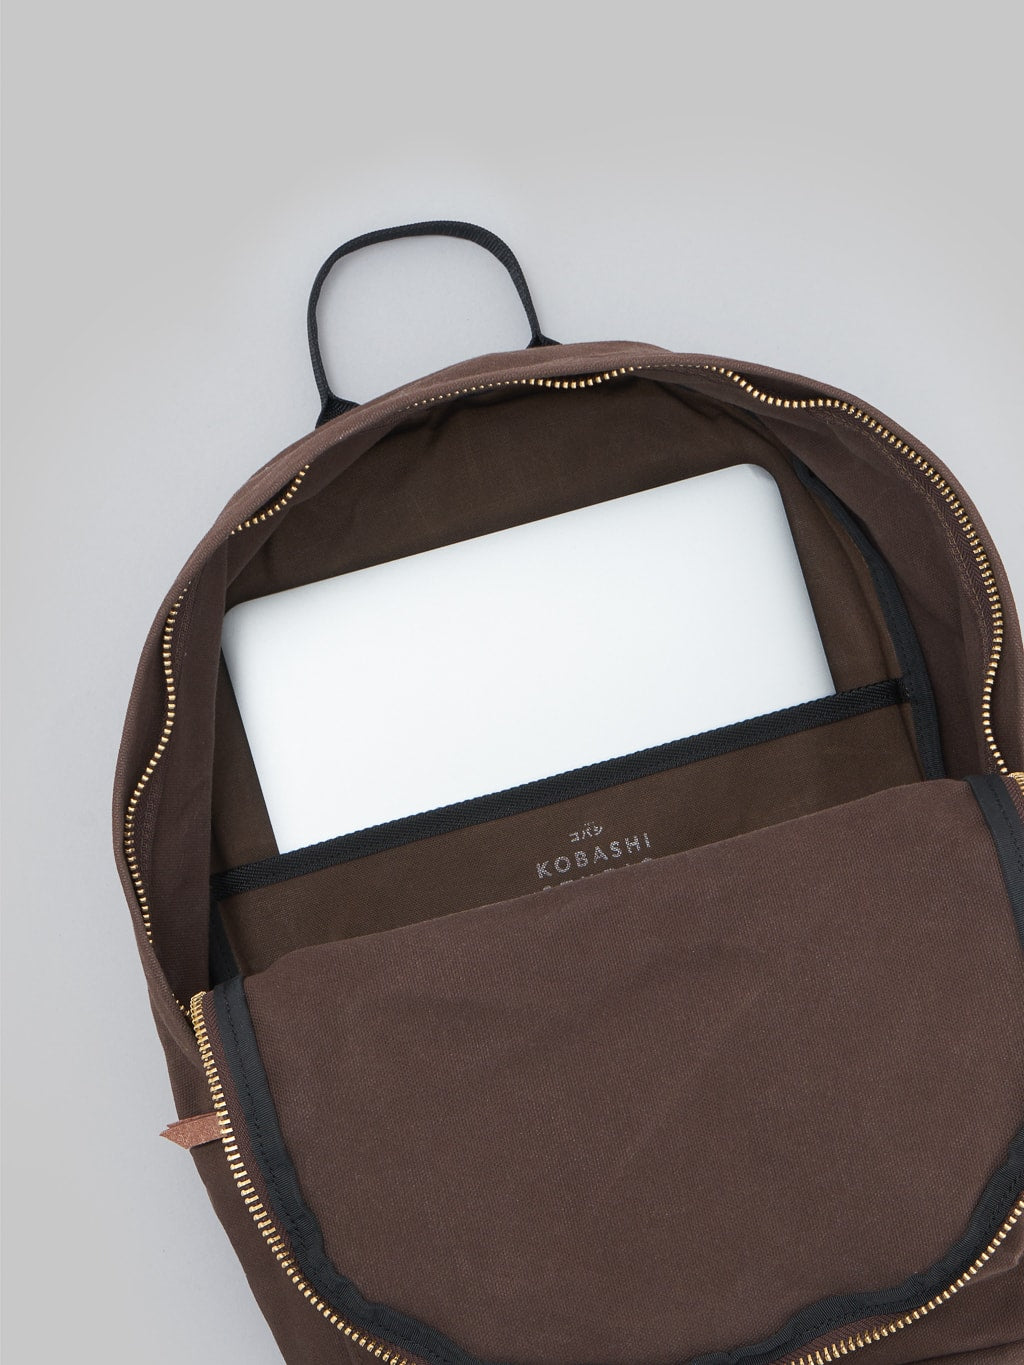 Kobashi Studio Standard Backpack Brown interior pocket